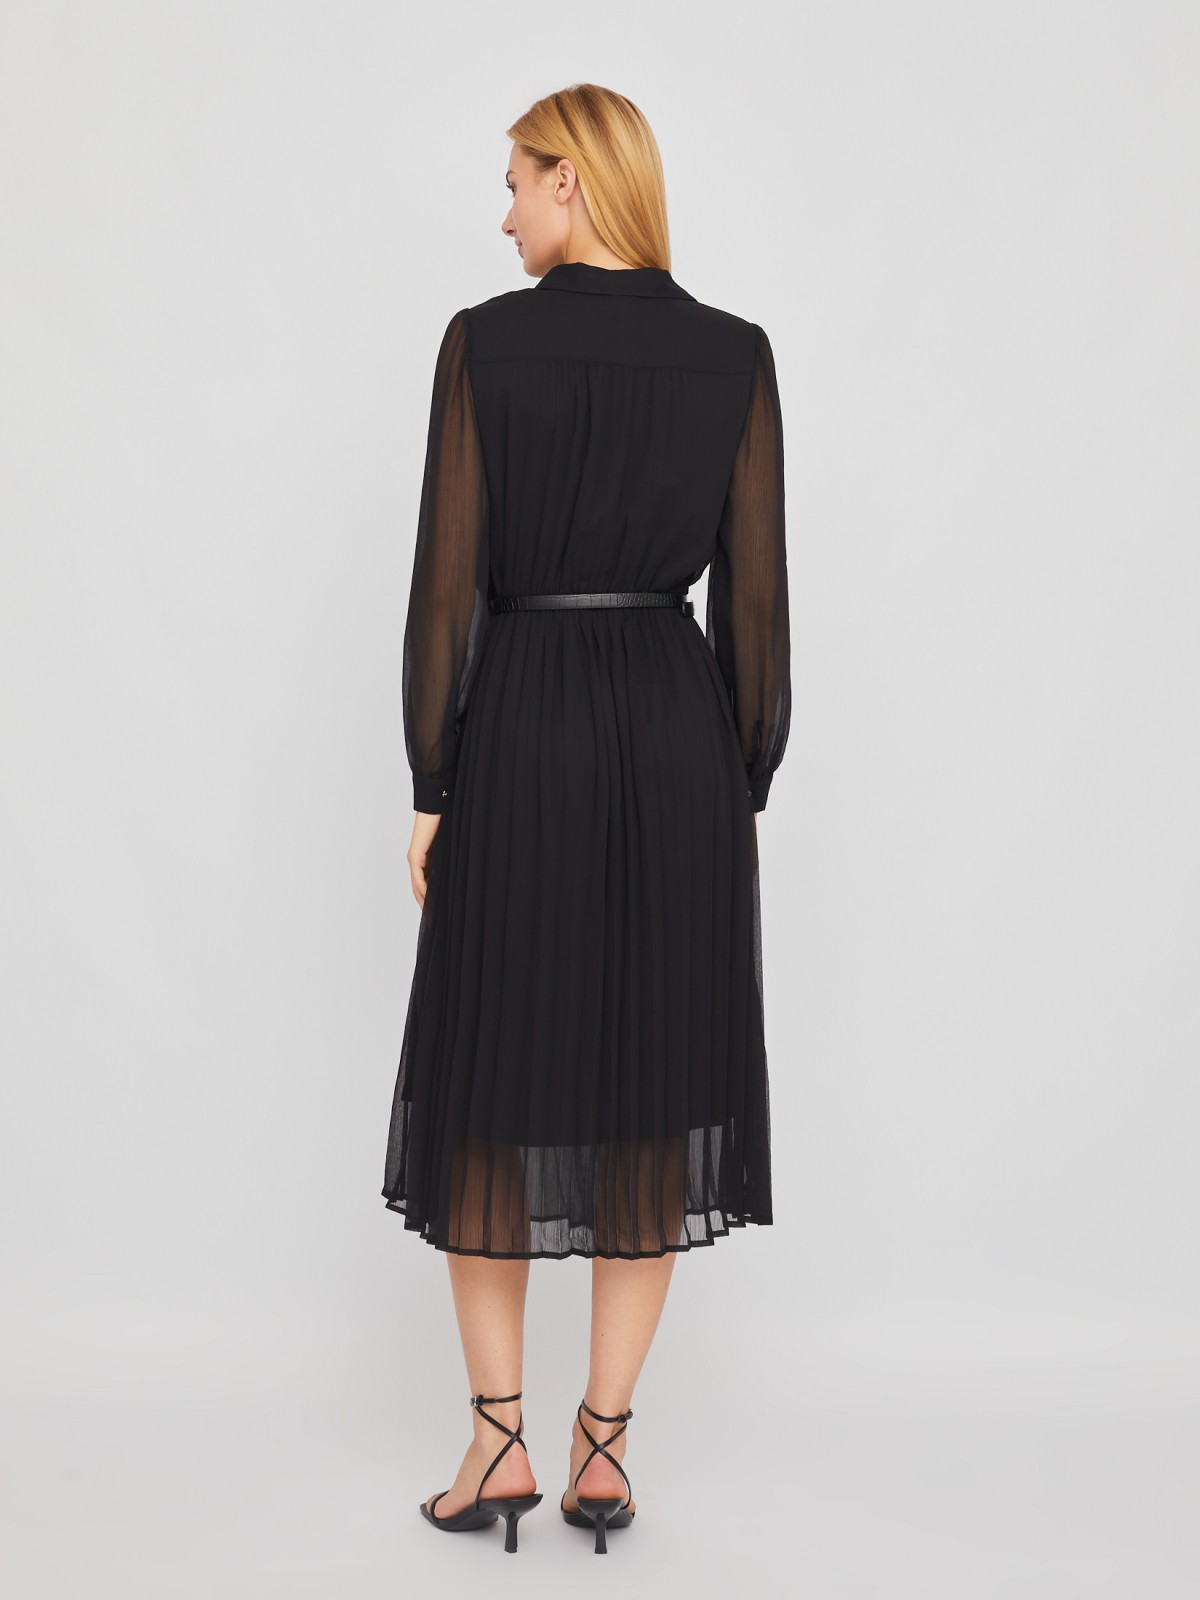 Шифоновое платье-рубашка длины миди с плиссировкой и акцентном на талии zolla 024118262033, цвет черный, размер S - фото 5